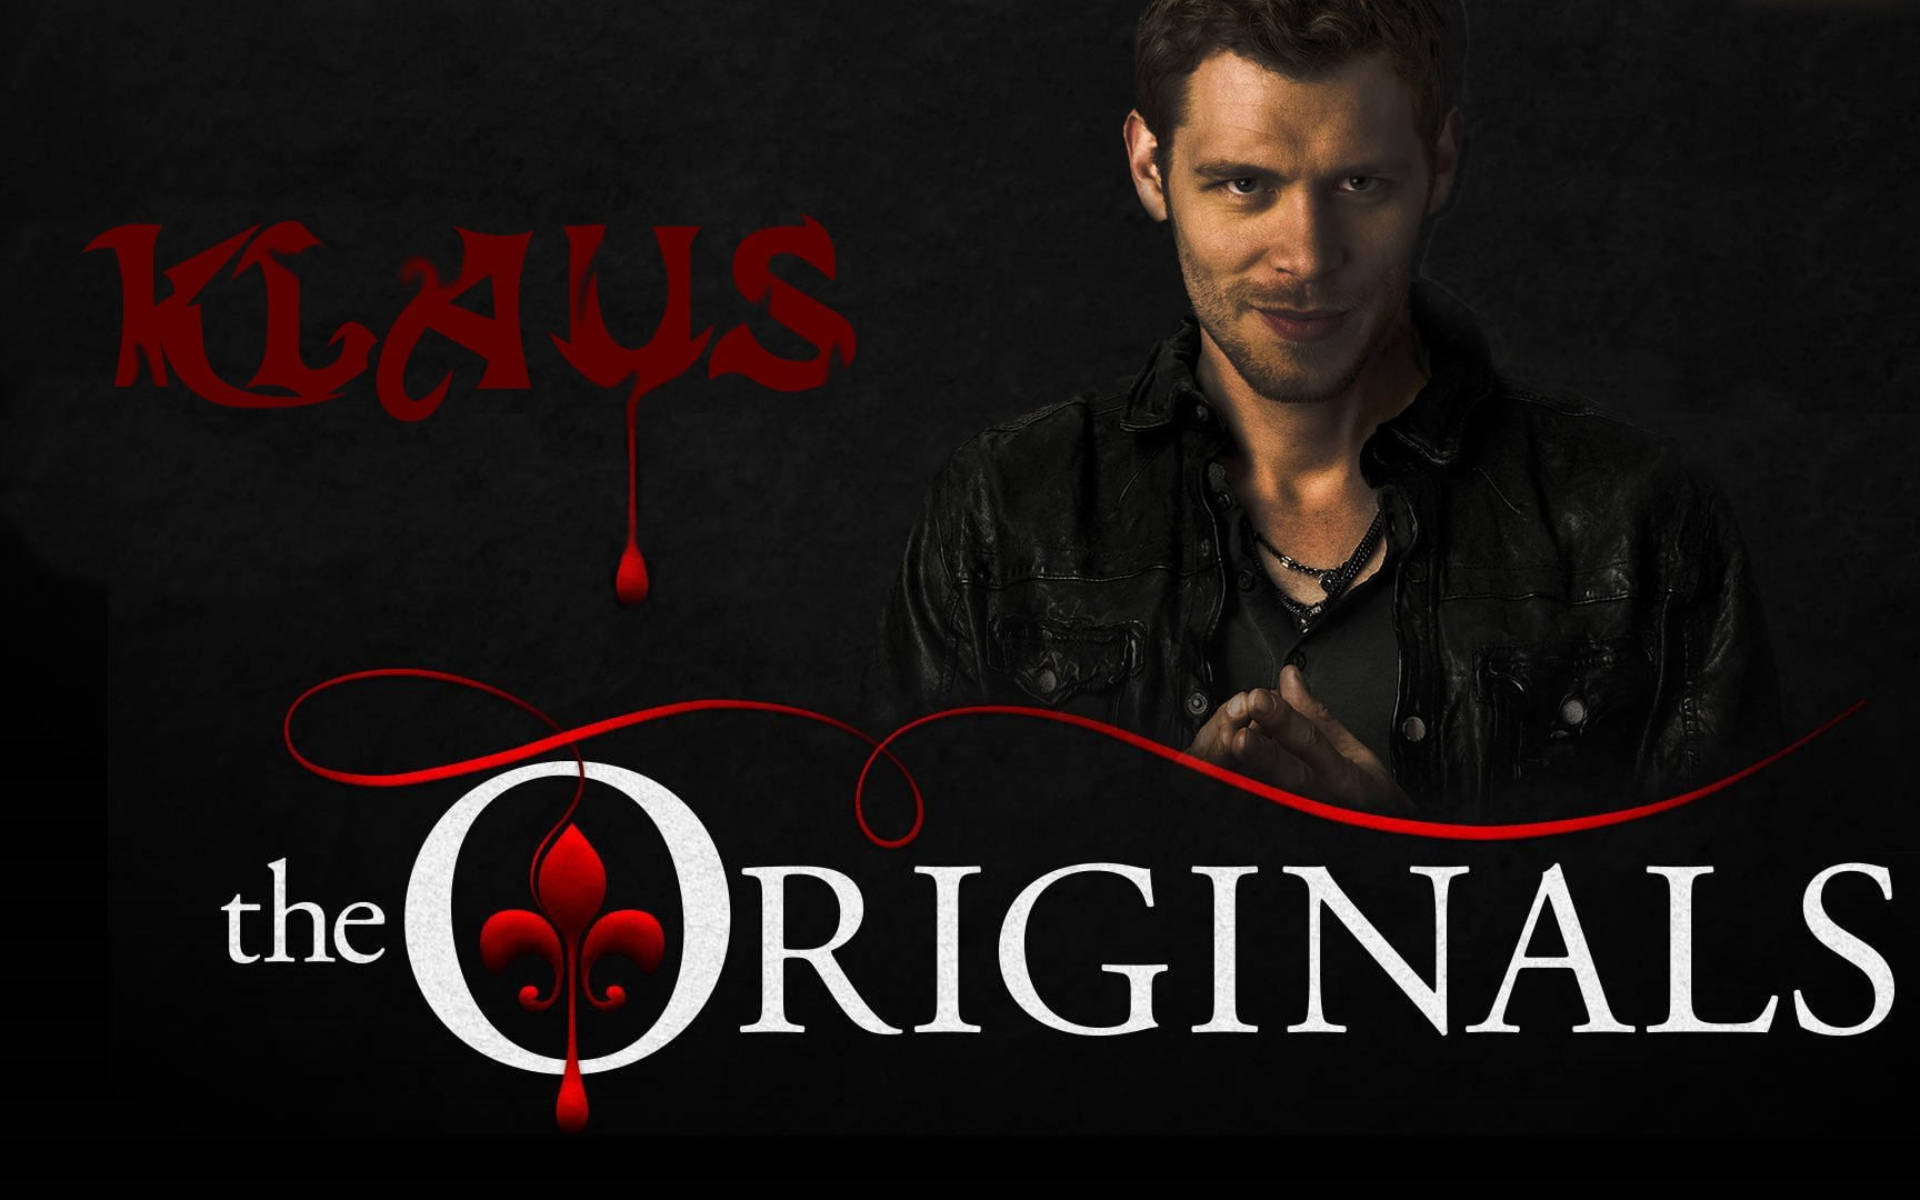 The Originals Klaus Cover Wallpaper